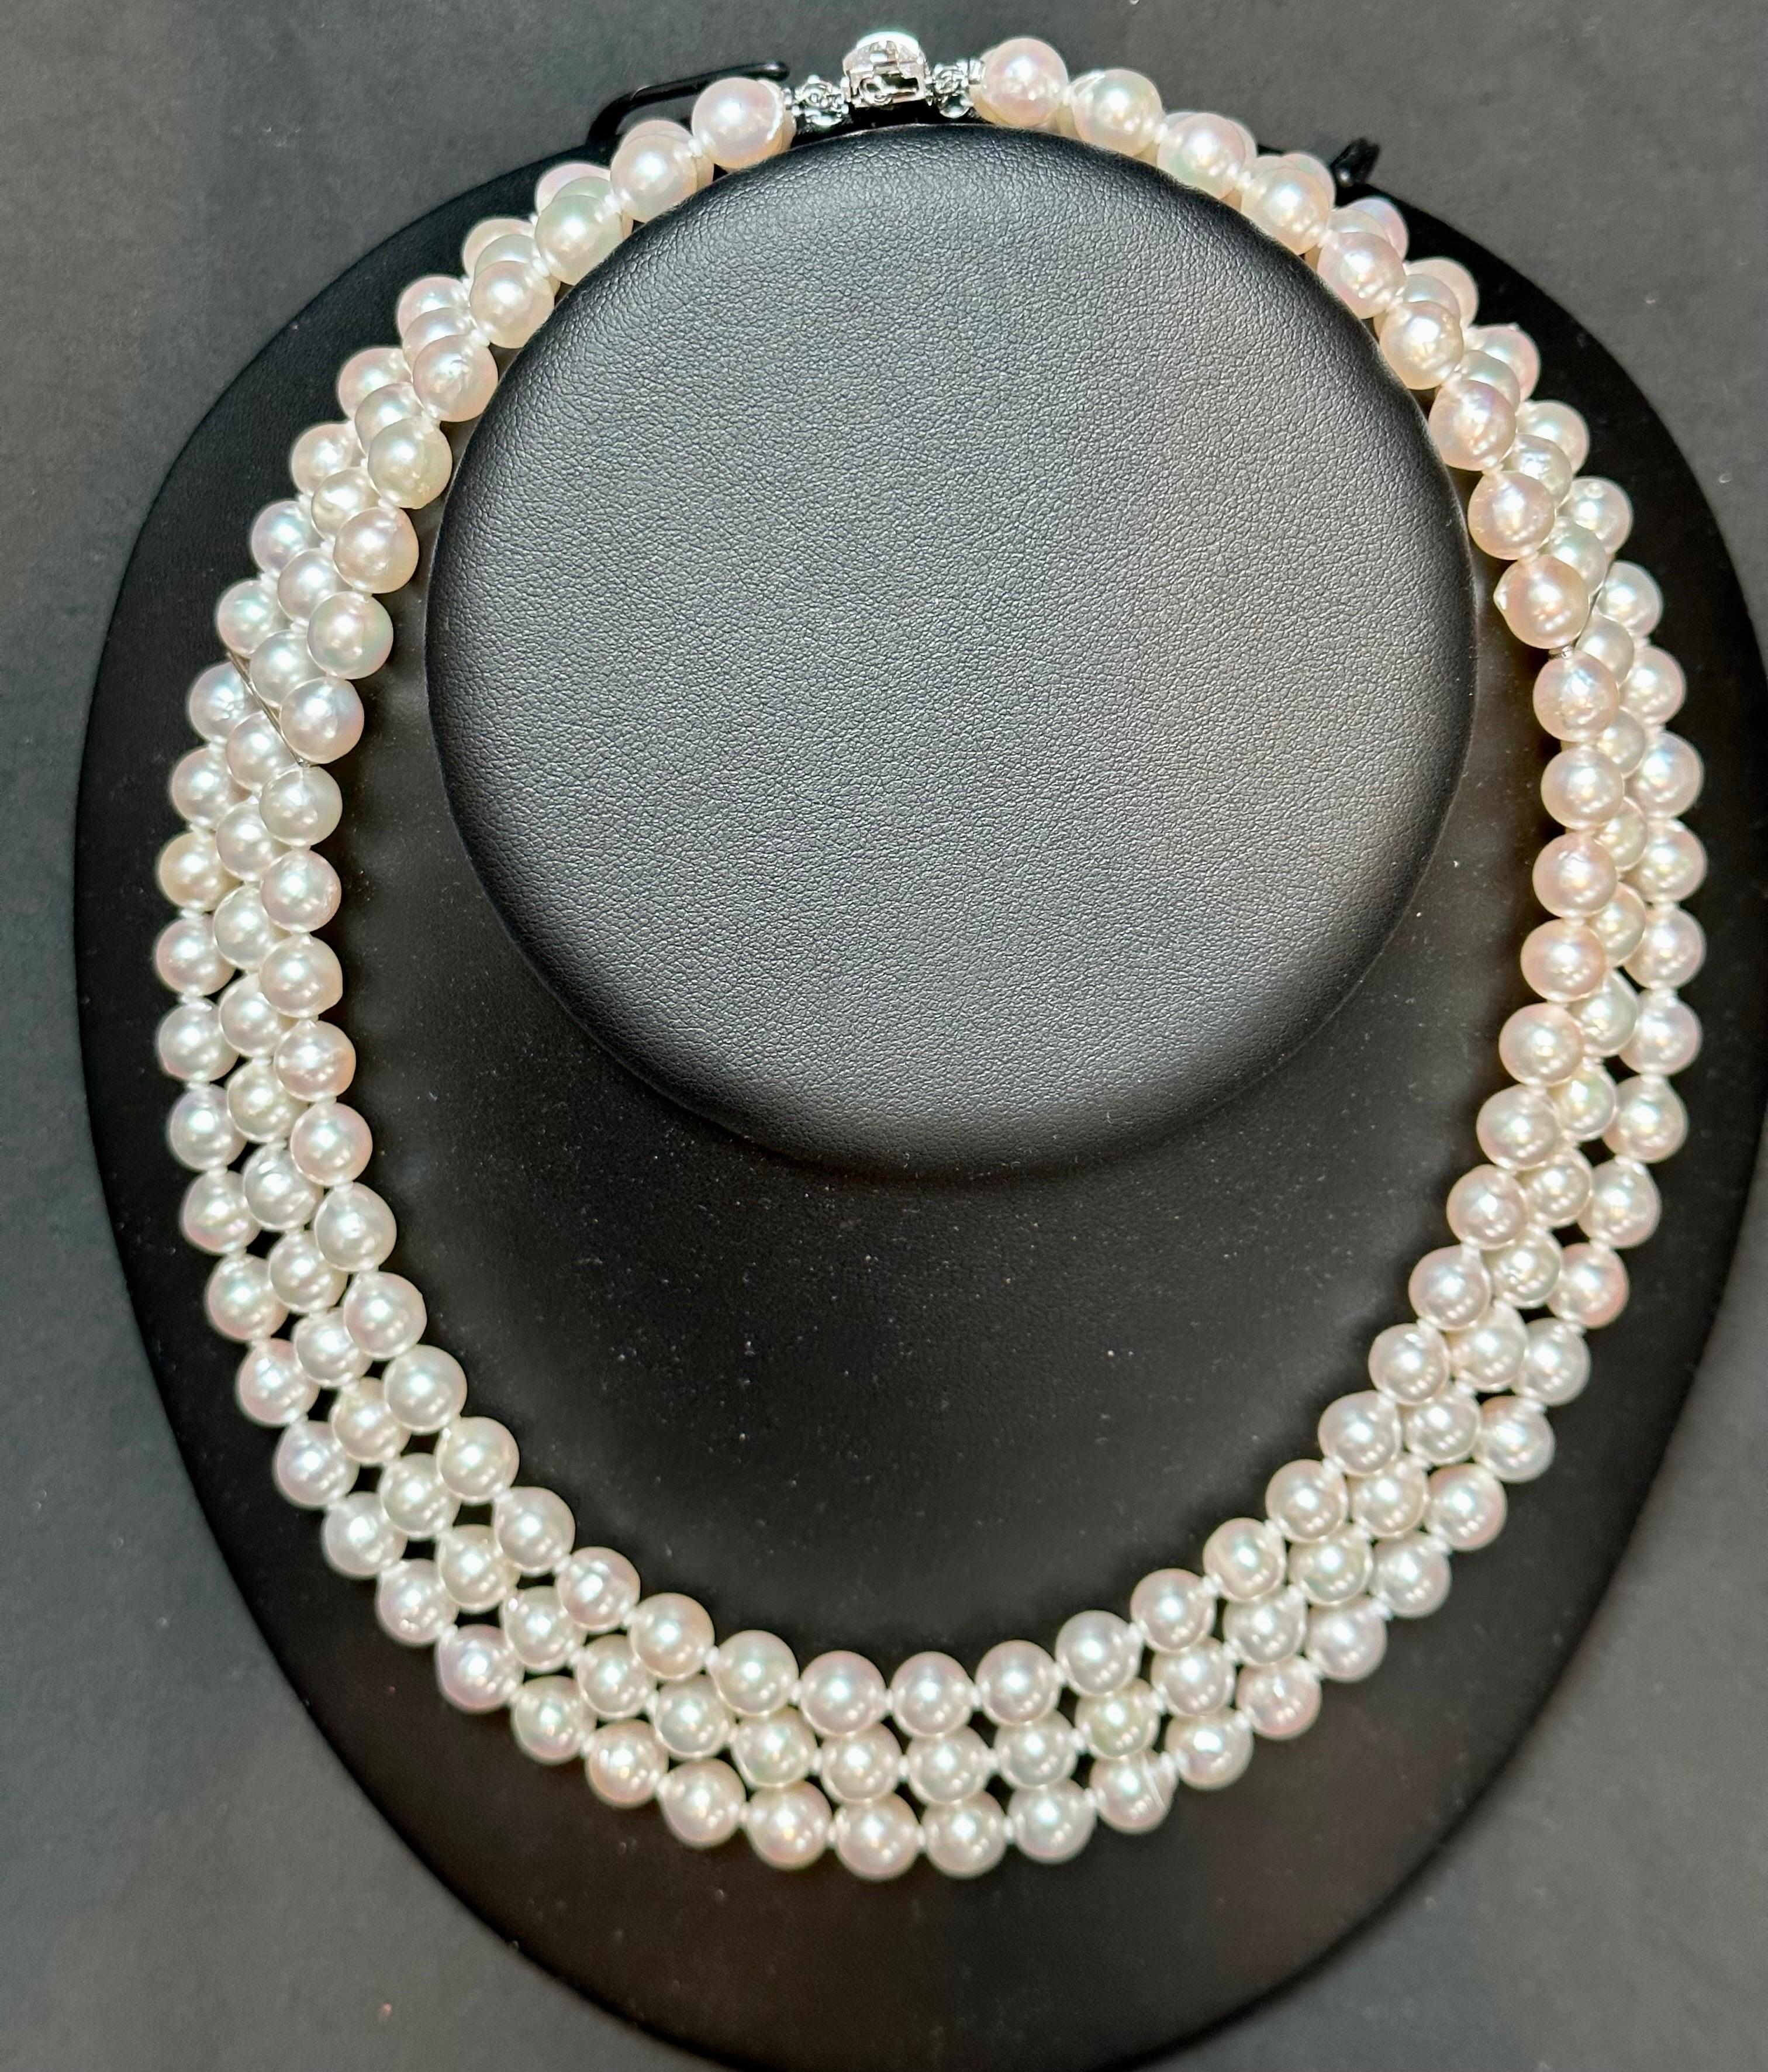 Wir präsentieren die 8mm Akoya Japan Pearl Triple Strand Choker Halskette, komplett mit einem Sterling Silber Verschluss. Diese exquisite Perlenkette besteht aus drei Reihen wunderschöner japanischer Akoya-Perlen, die jeweils etwa 7,8 bis 8 mm groß